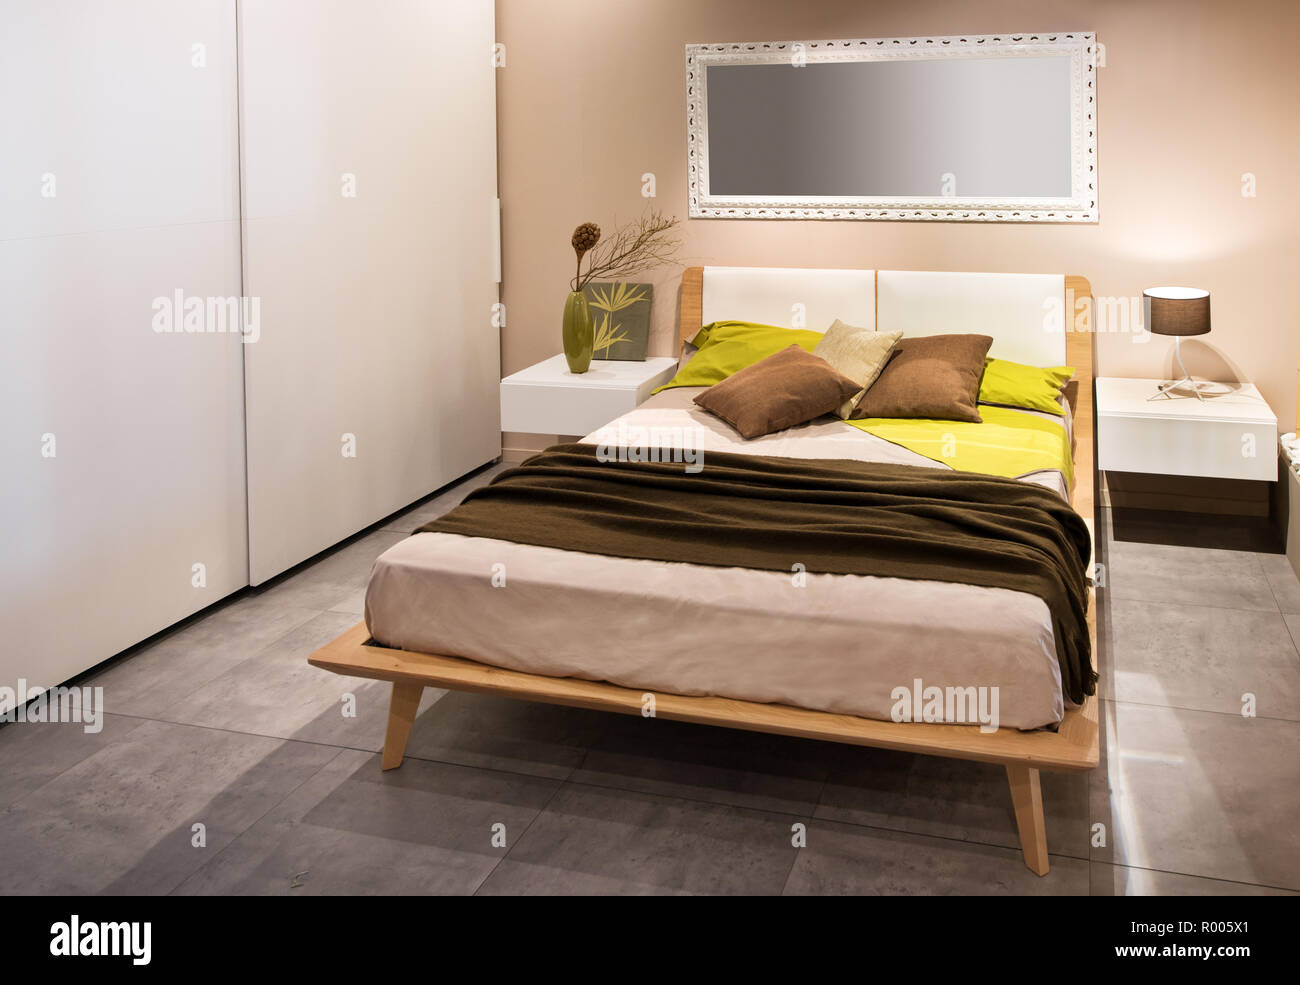 Modernes Schlafzimmer mit Doppelbett und im skandinavischen Stil seite Schränke in Beige und Grau gehaltene Einrichtung mit gelben Akzent Kissen auf dem divan Stockfoto